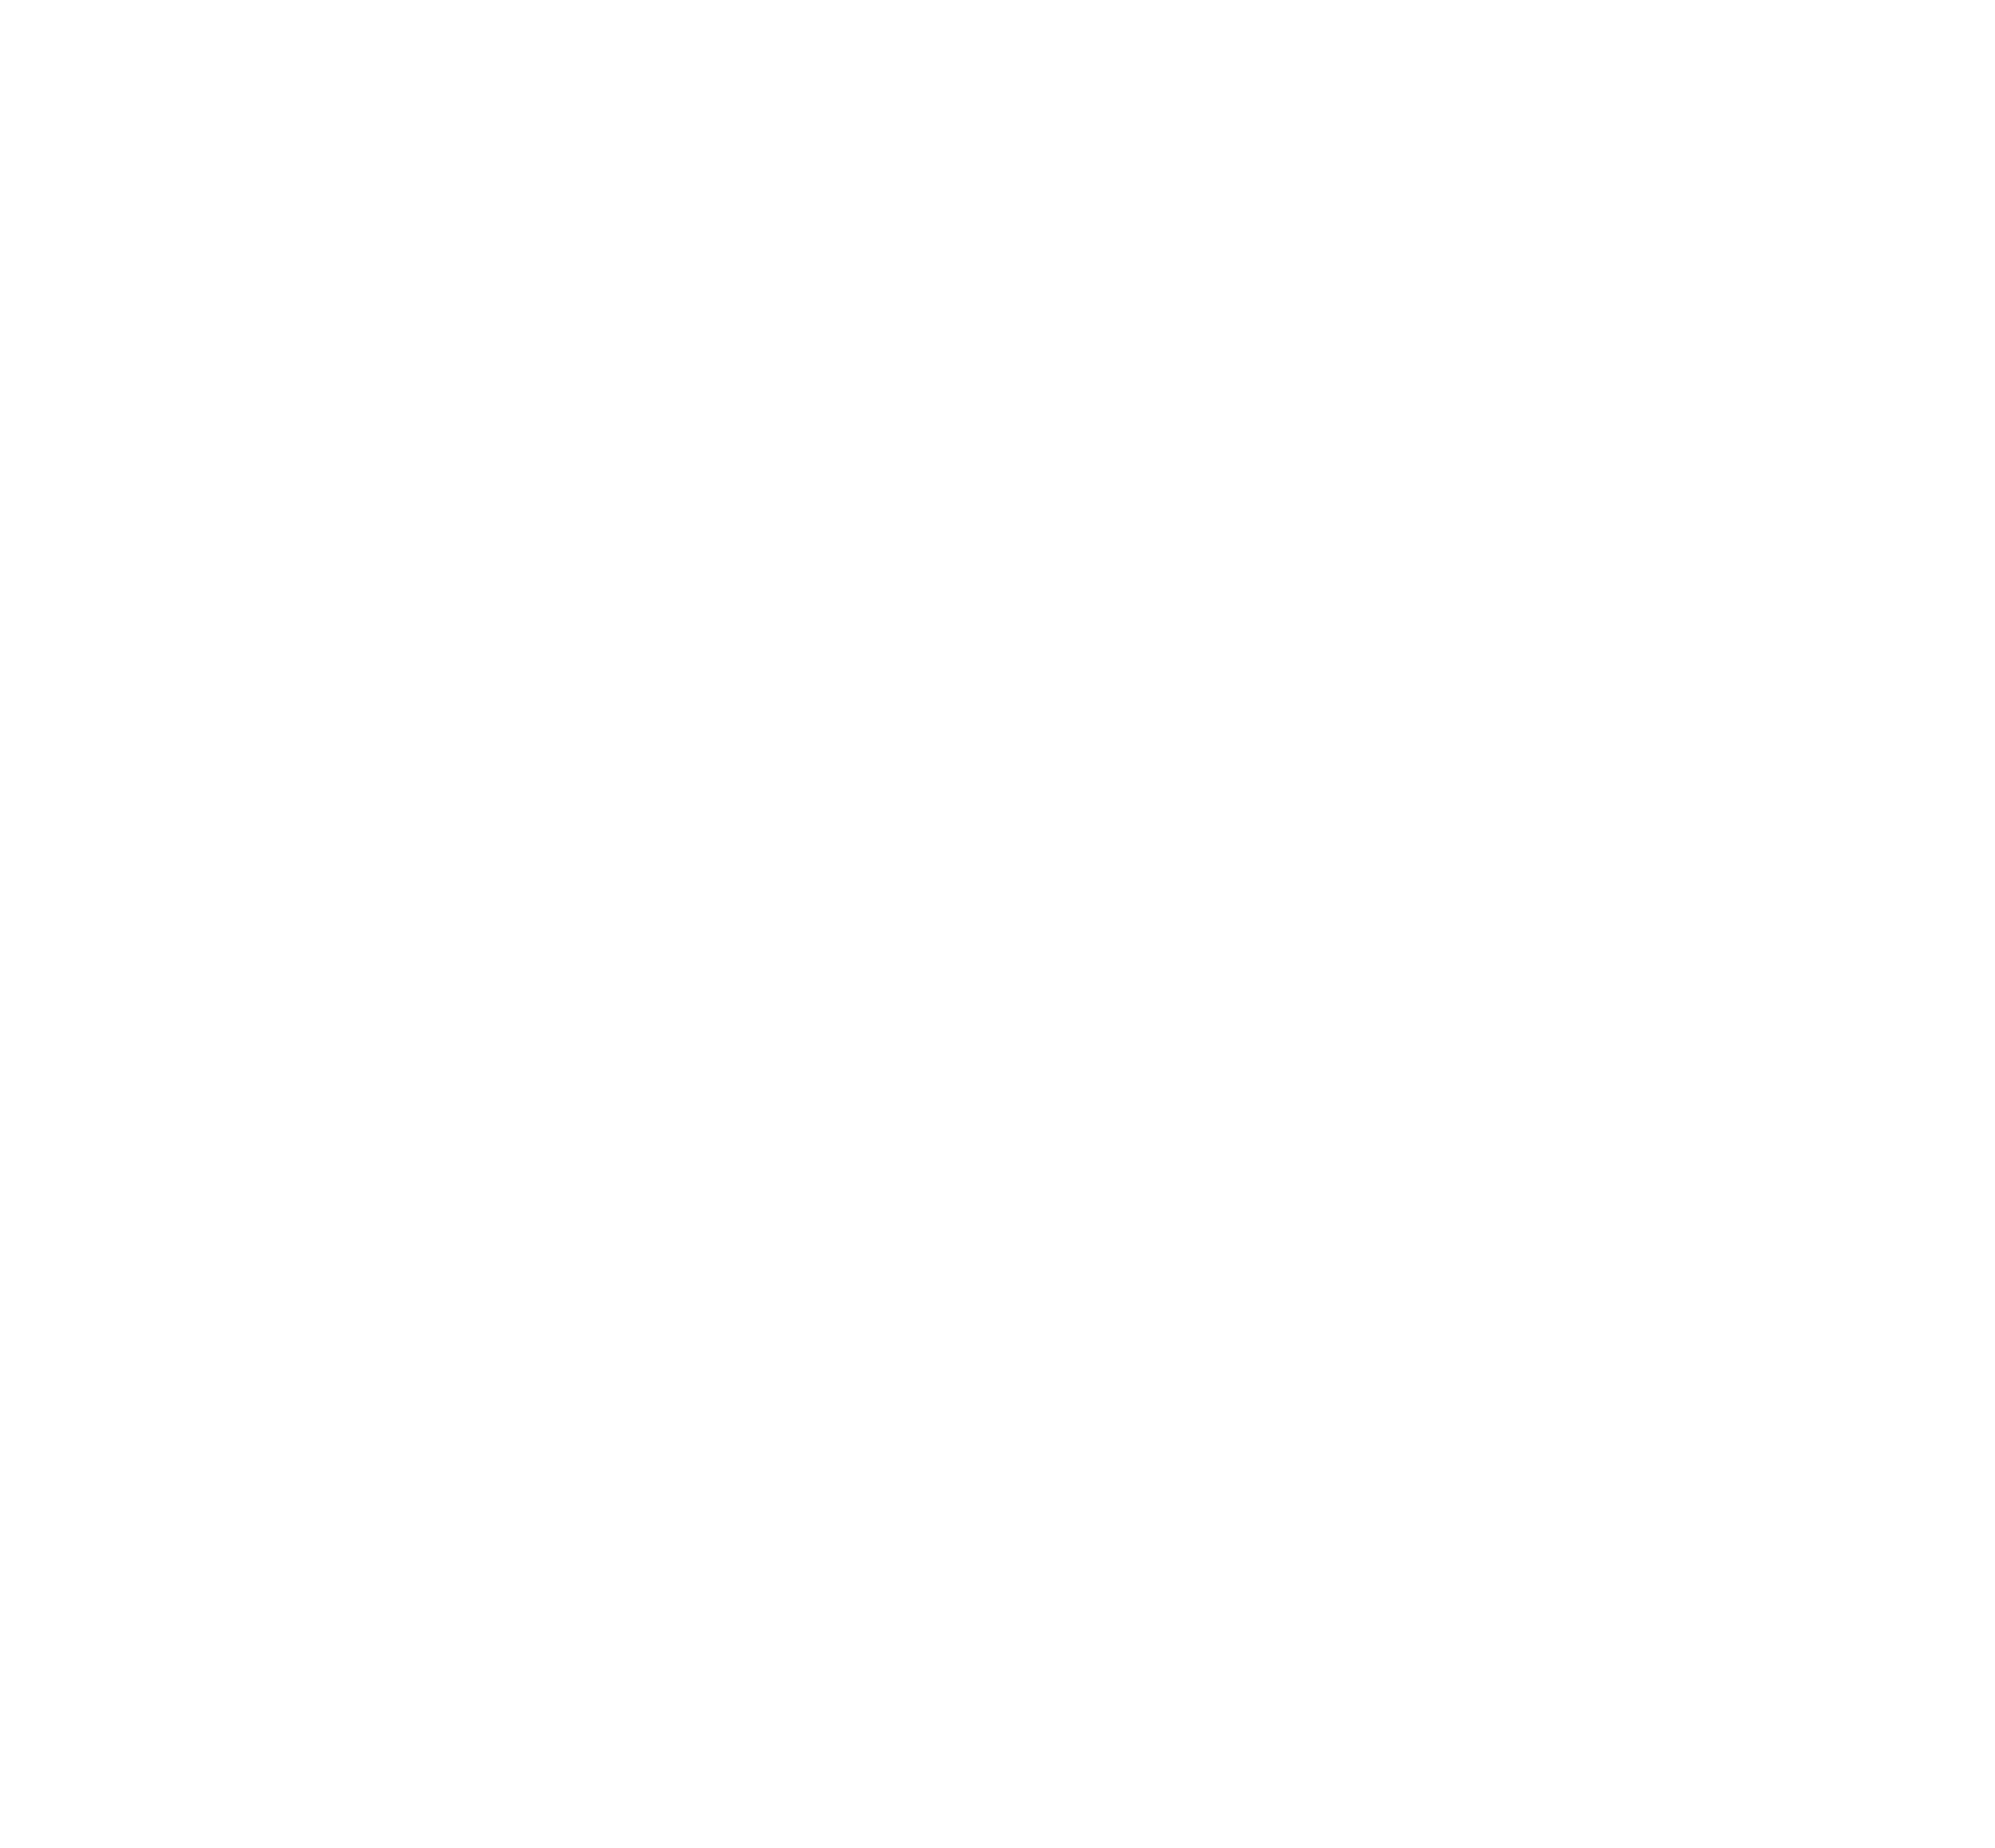 Kleintierklinik Bretzenheim logo